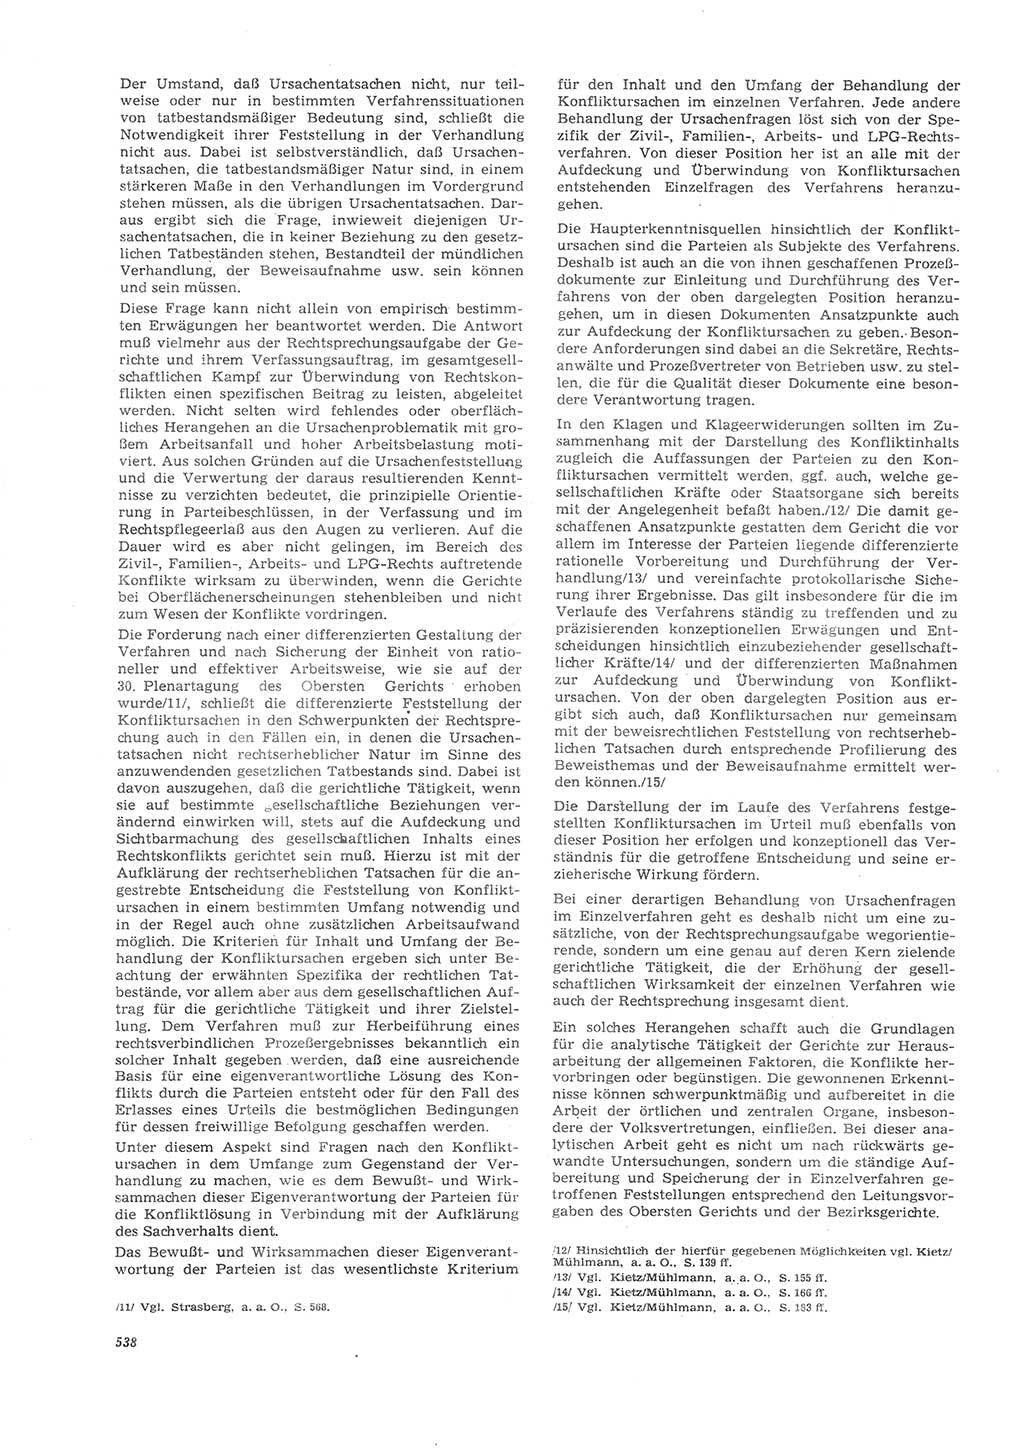 Neue Justiz (NJ), Zeitschrift für Recht und Rechtswissenschaft [Deutsche Demokratische Republik (DDR)], 26. Jahrgang 1972, Seite 538 (NJ DDR 1972, S. 538)